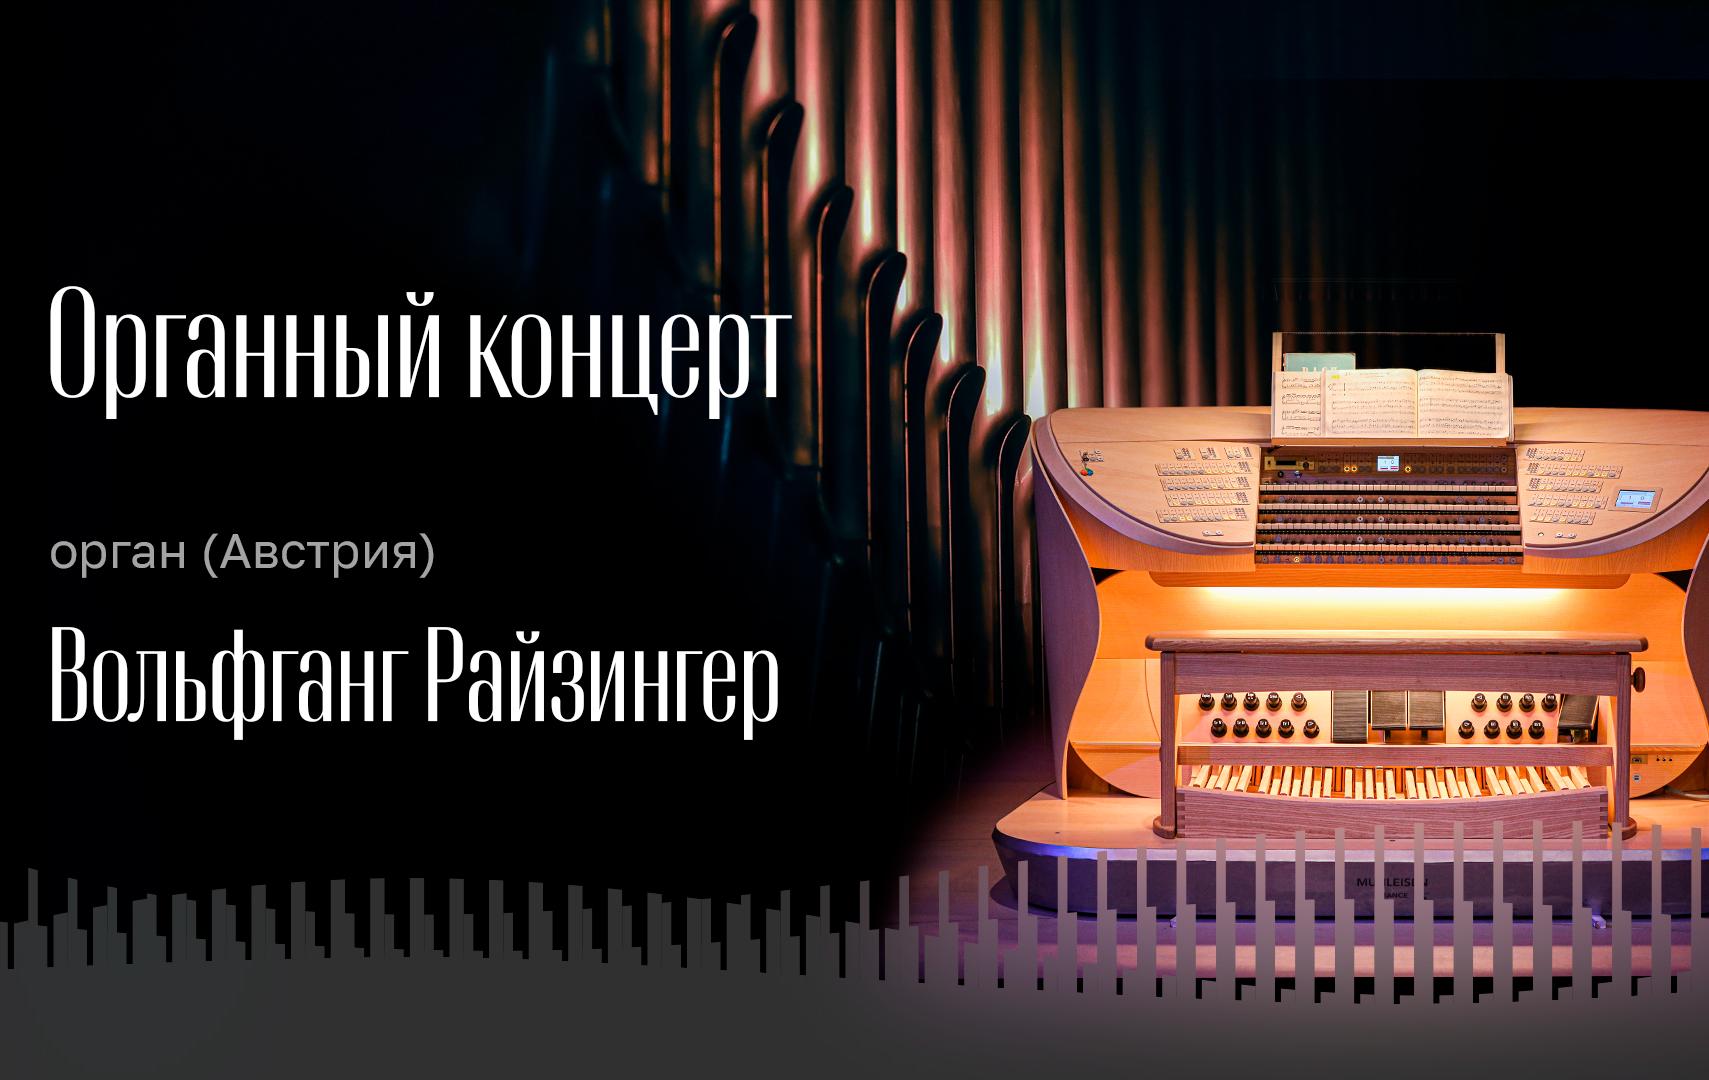 Трансляция органного концерта!